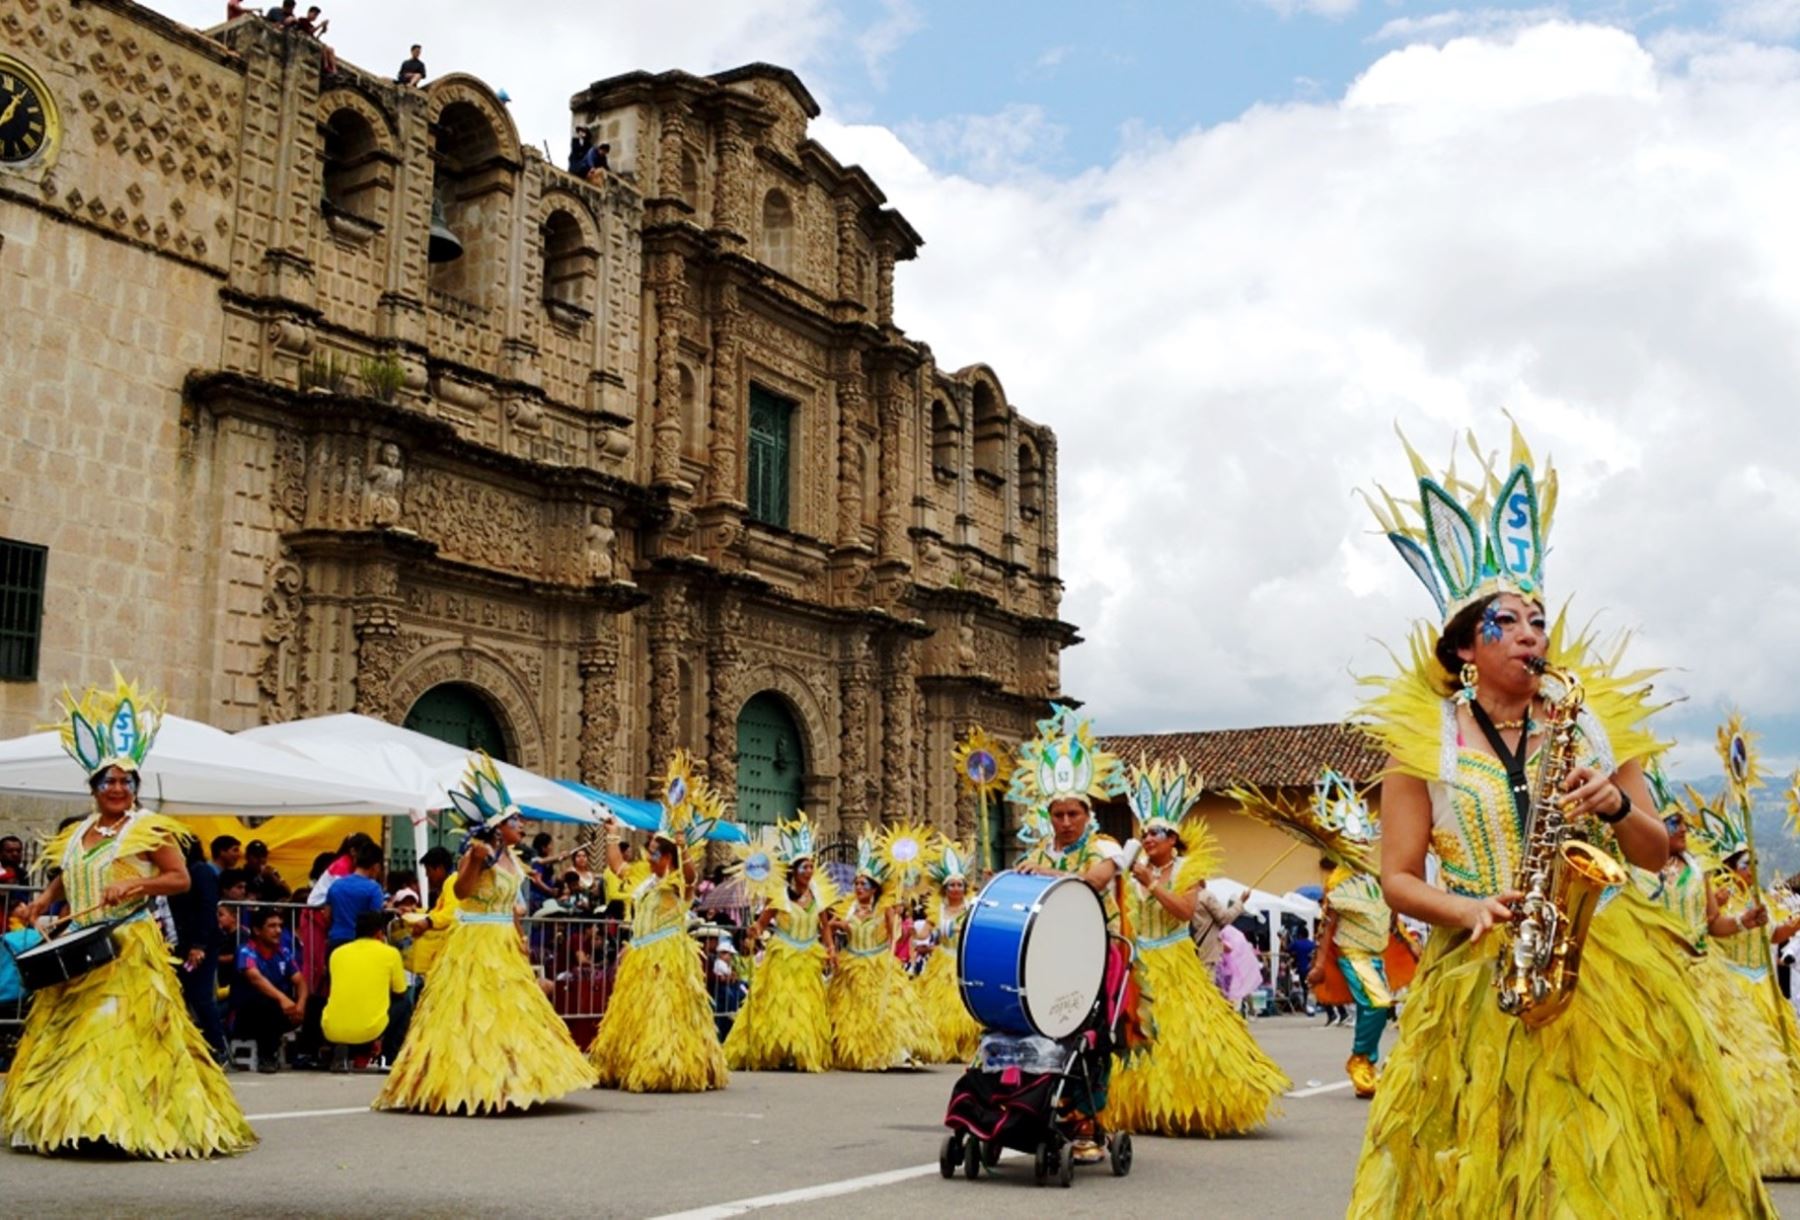 El tradicional carnaval de Cajamarca generará movimiento económico de más de S/ 10 millones, beneficiando a diversas actividades económicas de esta ciudad. Foto: Eduard Lozano.